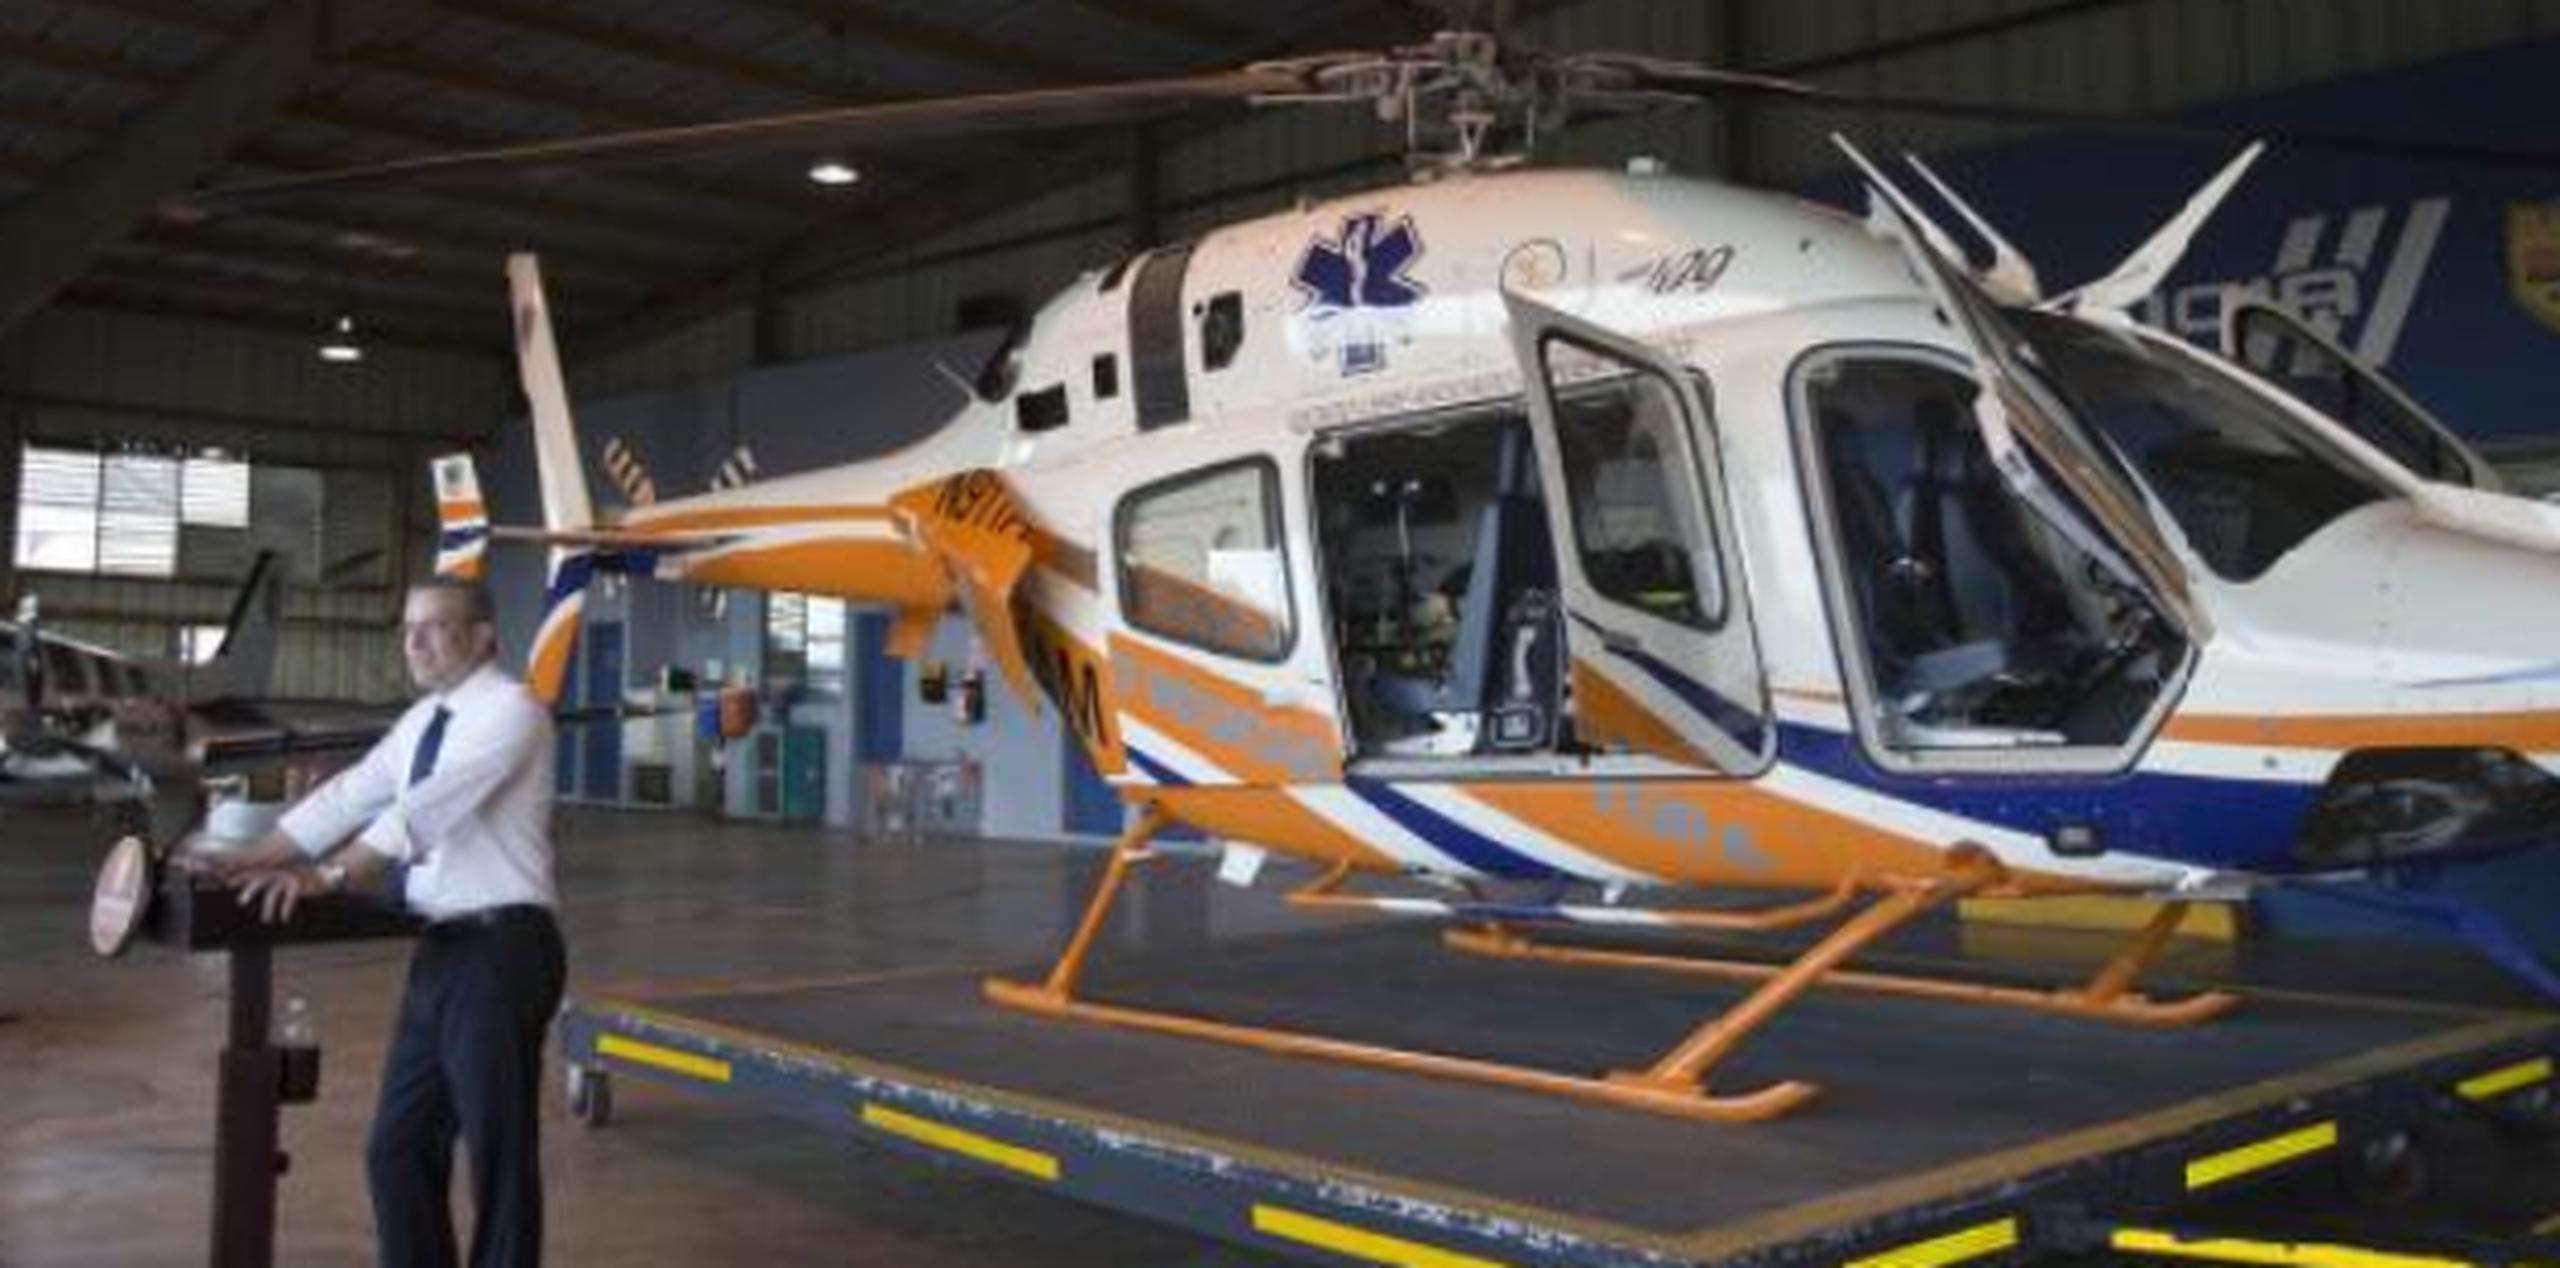 El entonces gobernador Alejandro García Padilla daba detalles sobre la compra del helicóptero, que ahora se busca operar como APP. (Archivo)